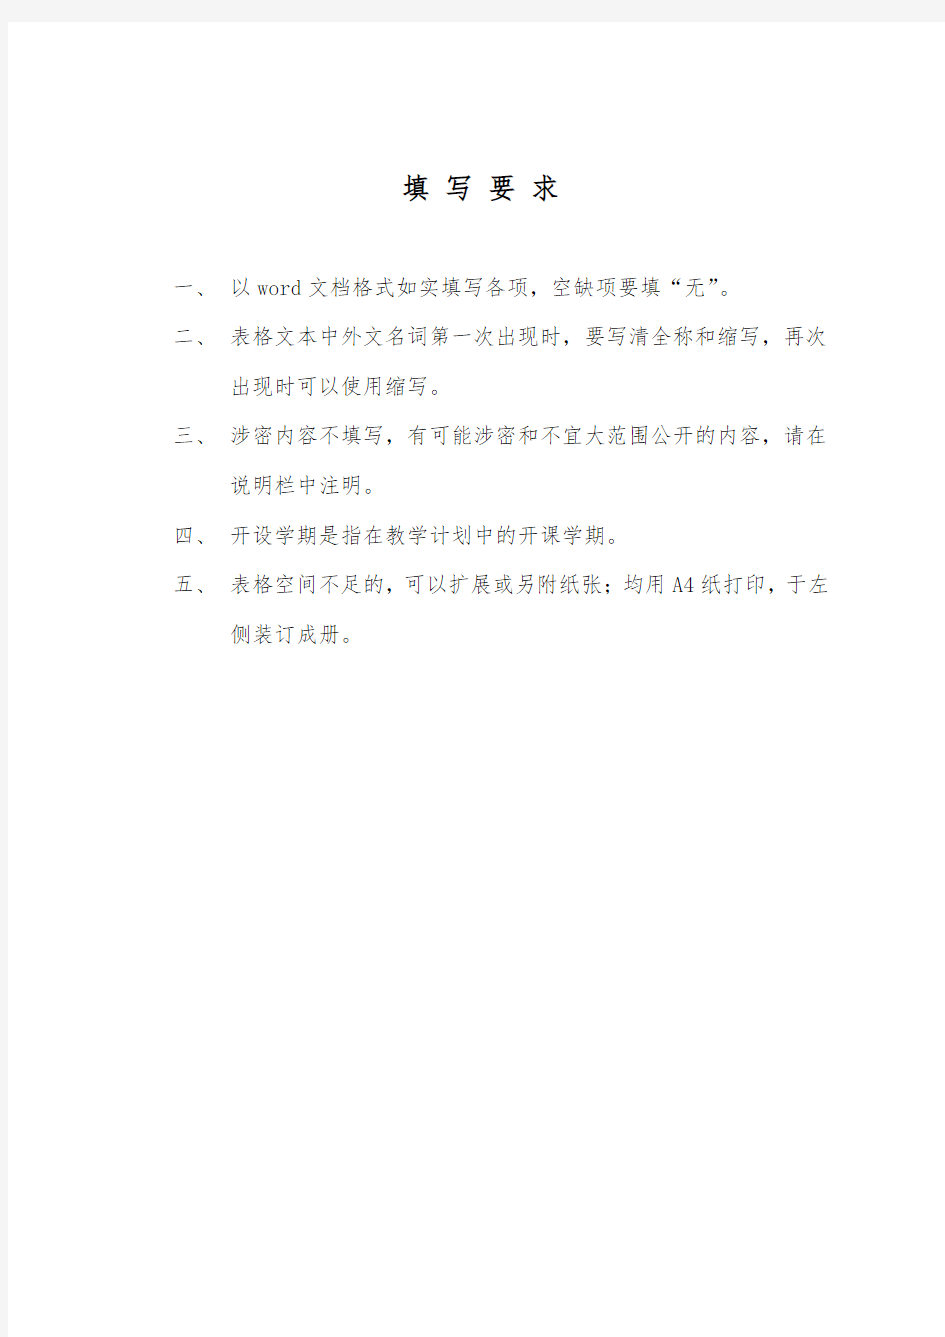 上海高校示范性全英语教学课程建设项目申报表.doc